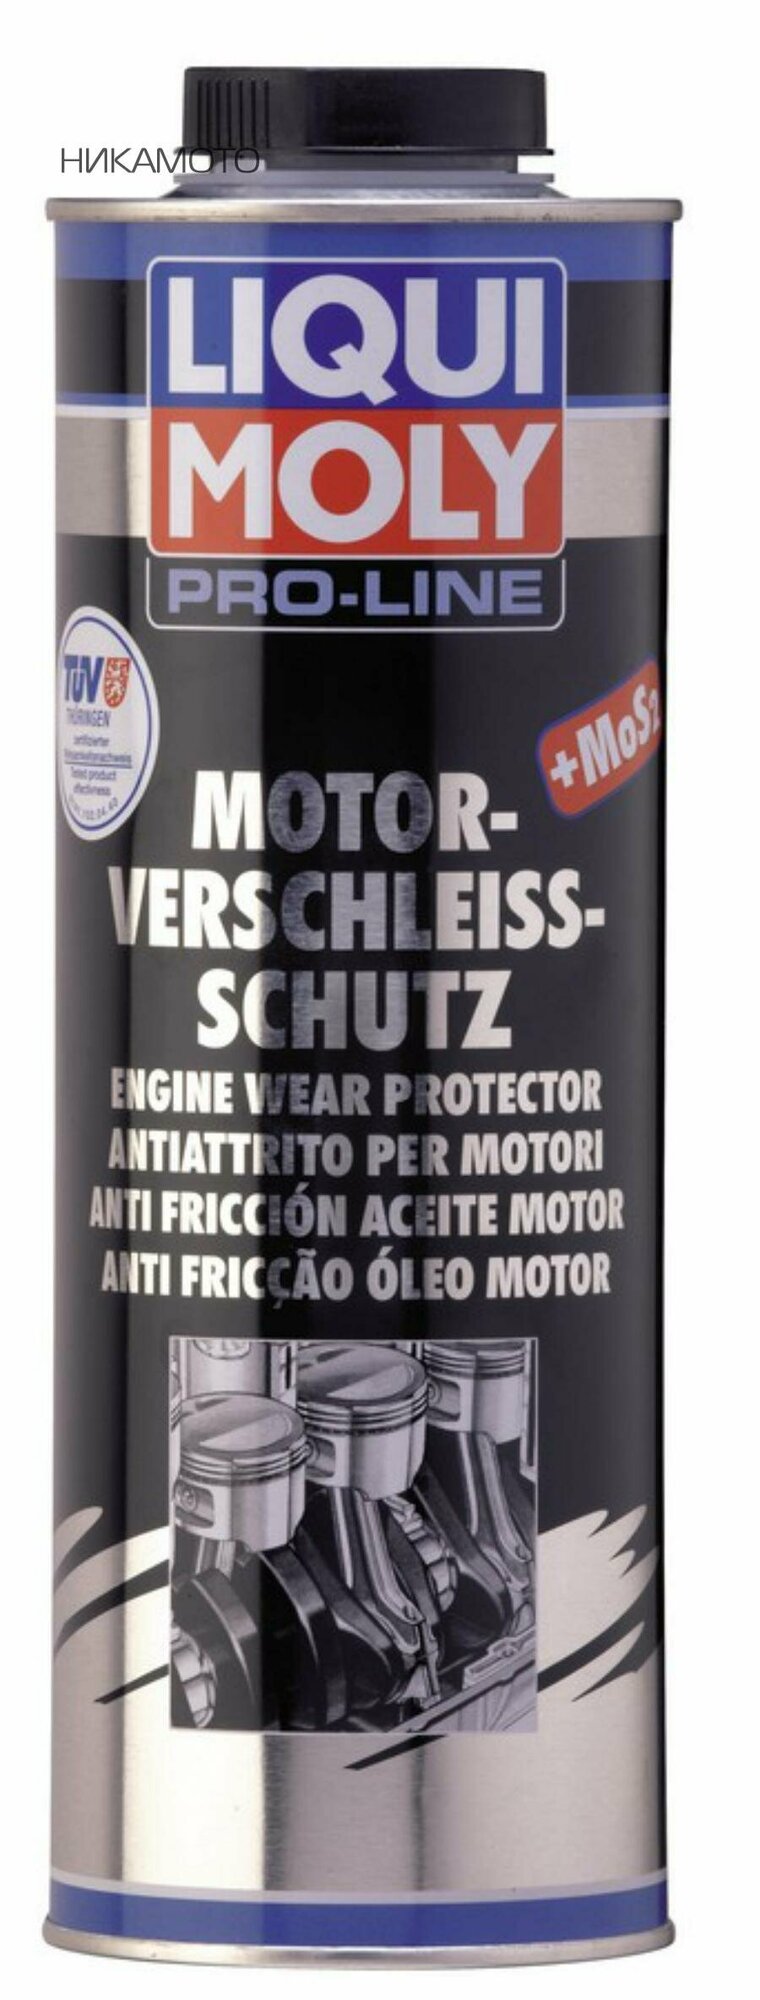 LIQUI MOLY 5197 Антифрикционная присадка в моторное масло с дисульфидом молибдена Pro-Line Motor-Verschleiss-Schutz - 1л